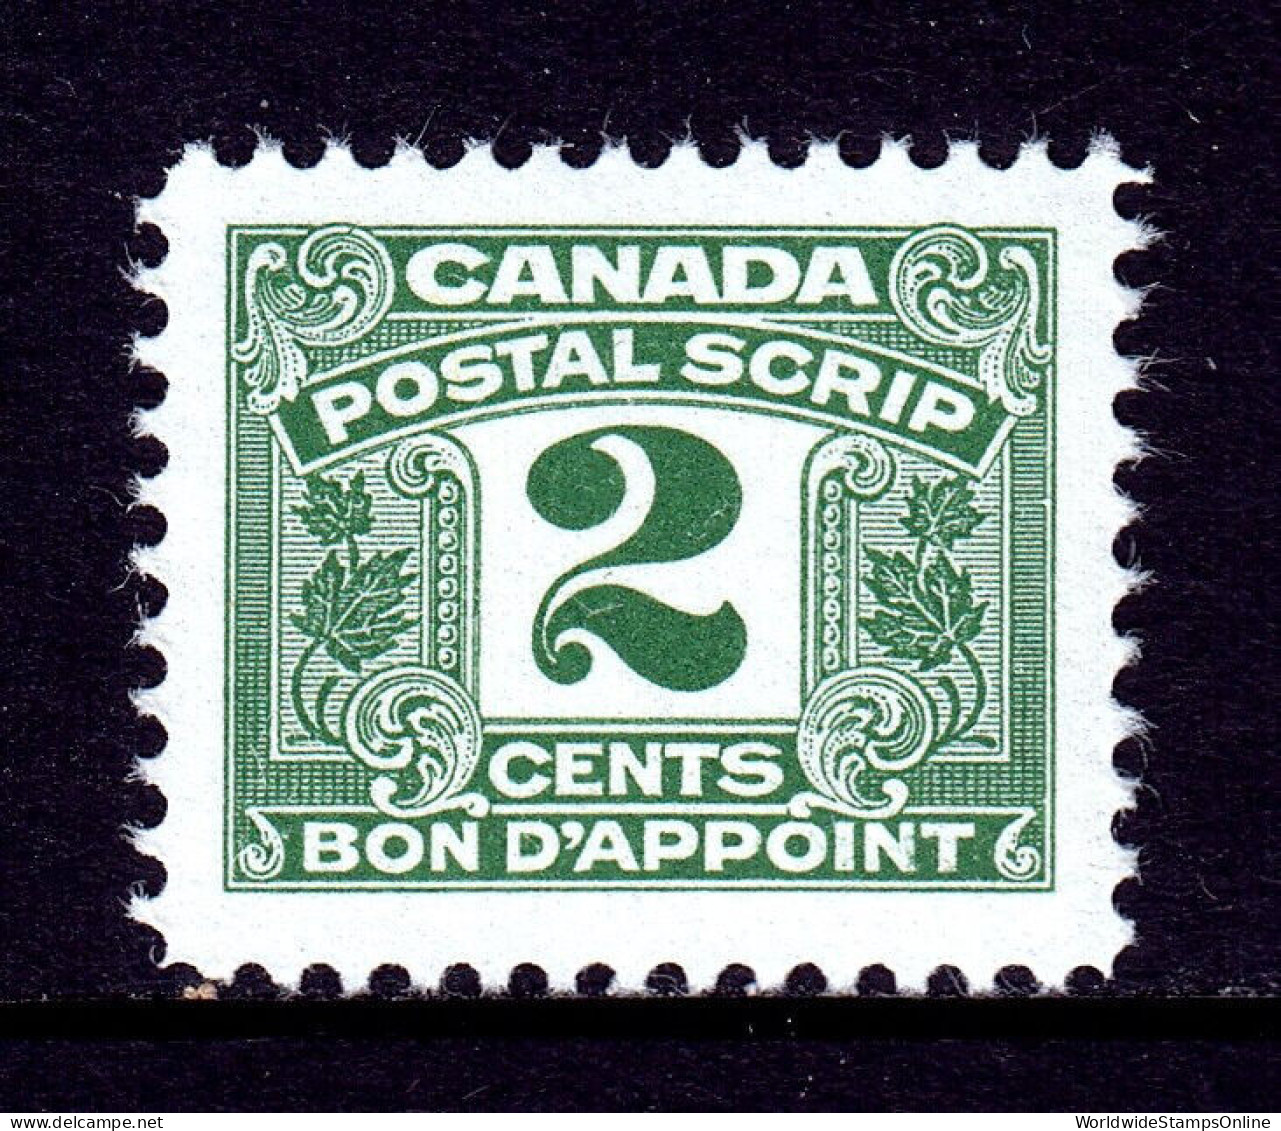 CANADA — VAN DAM FPS42 — 2¢ THIRD ISSUE POSTAL SCRIPT — MNH — CV $31 - Fiscaux